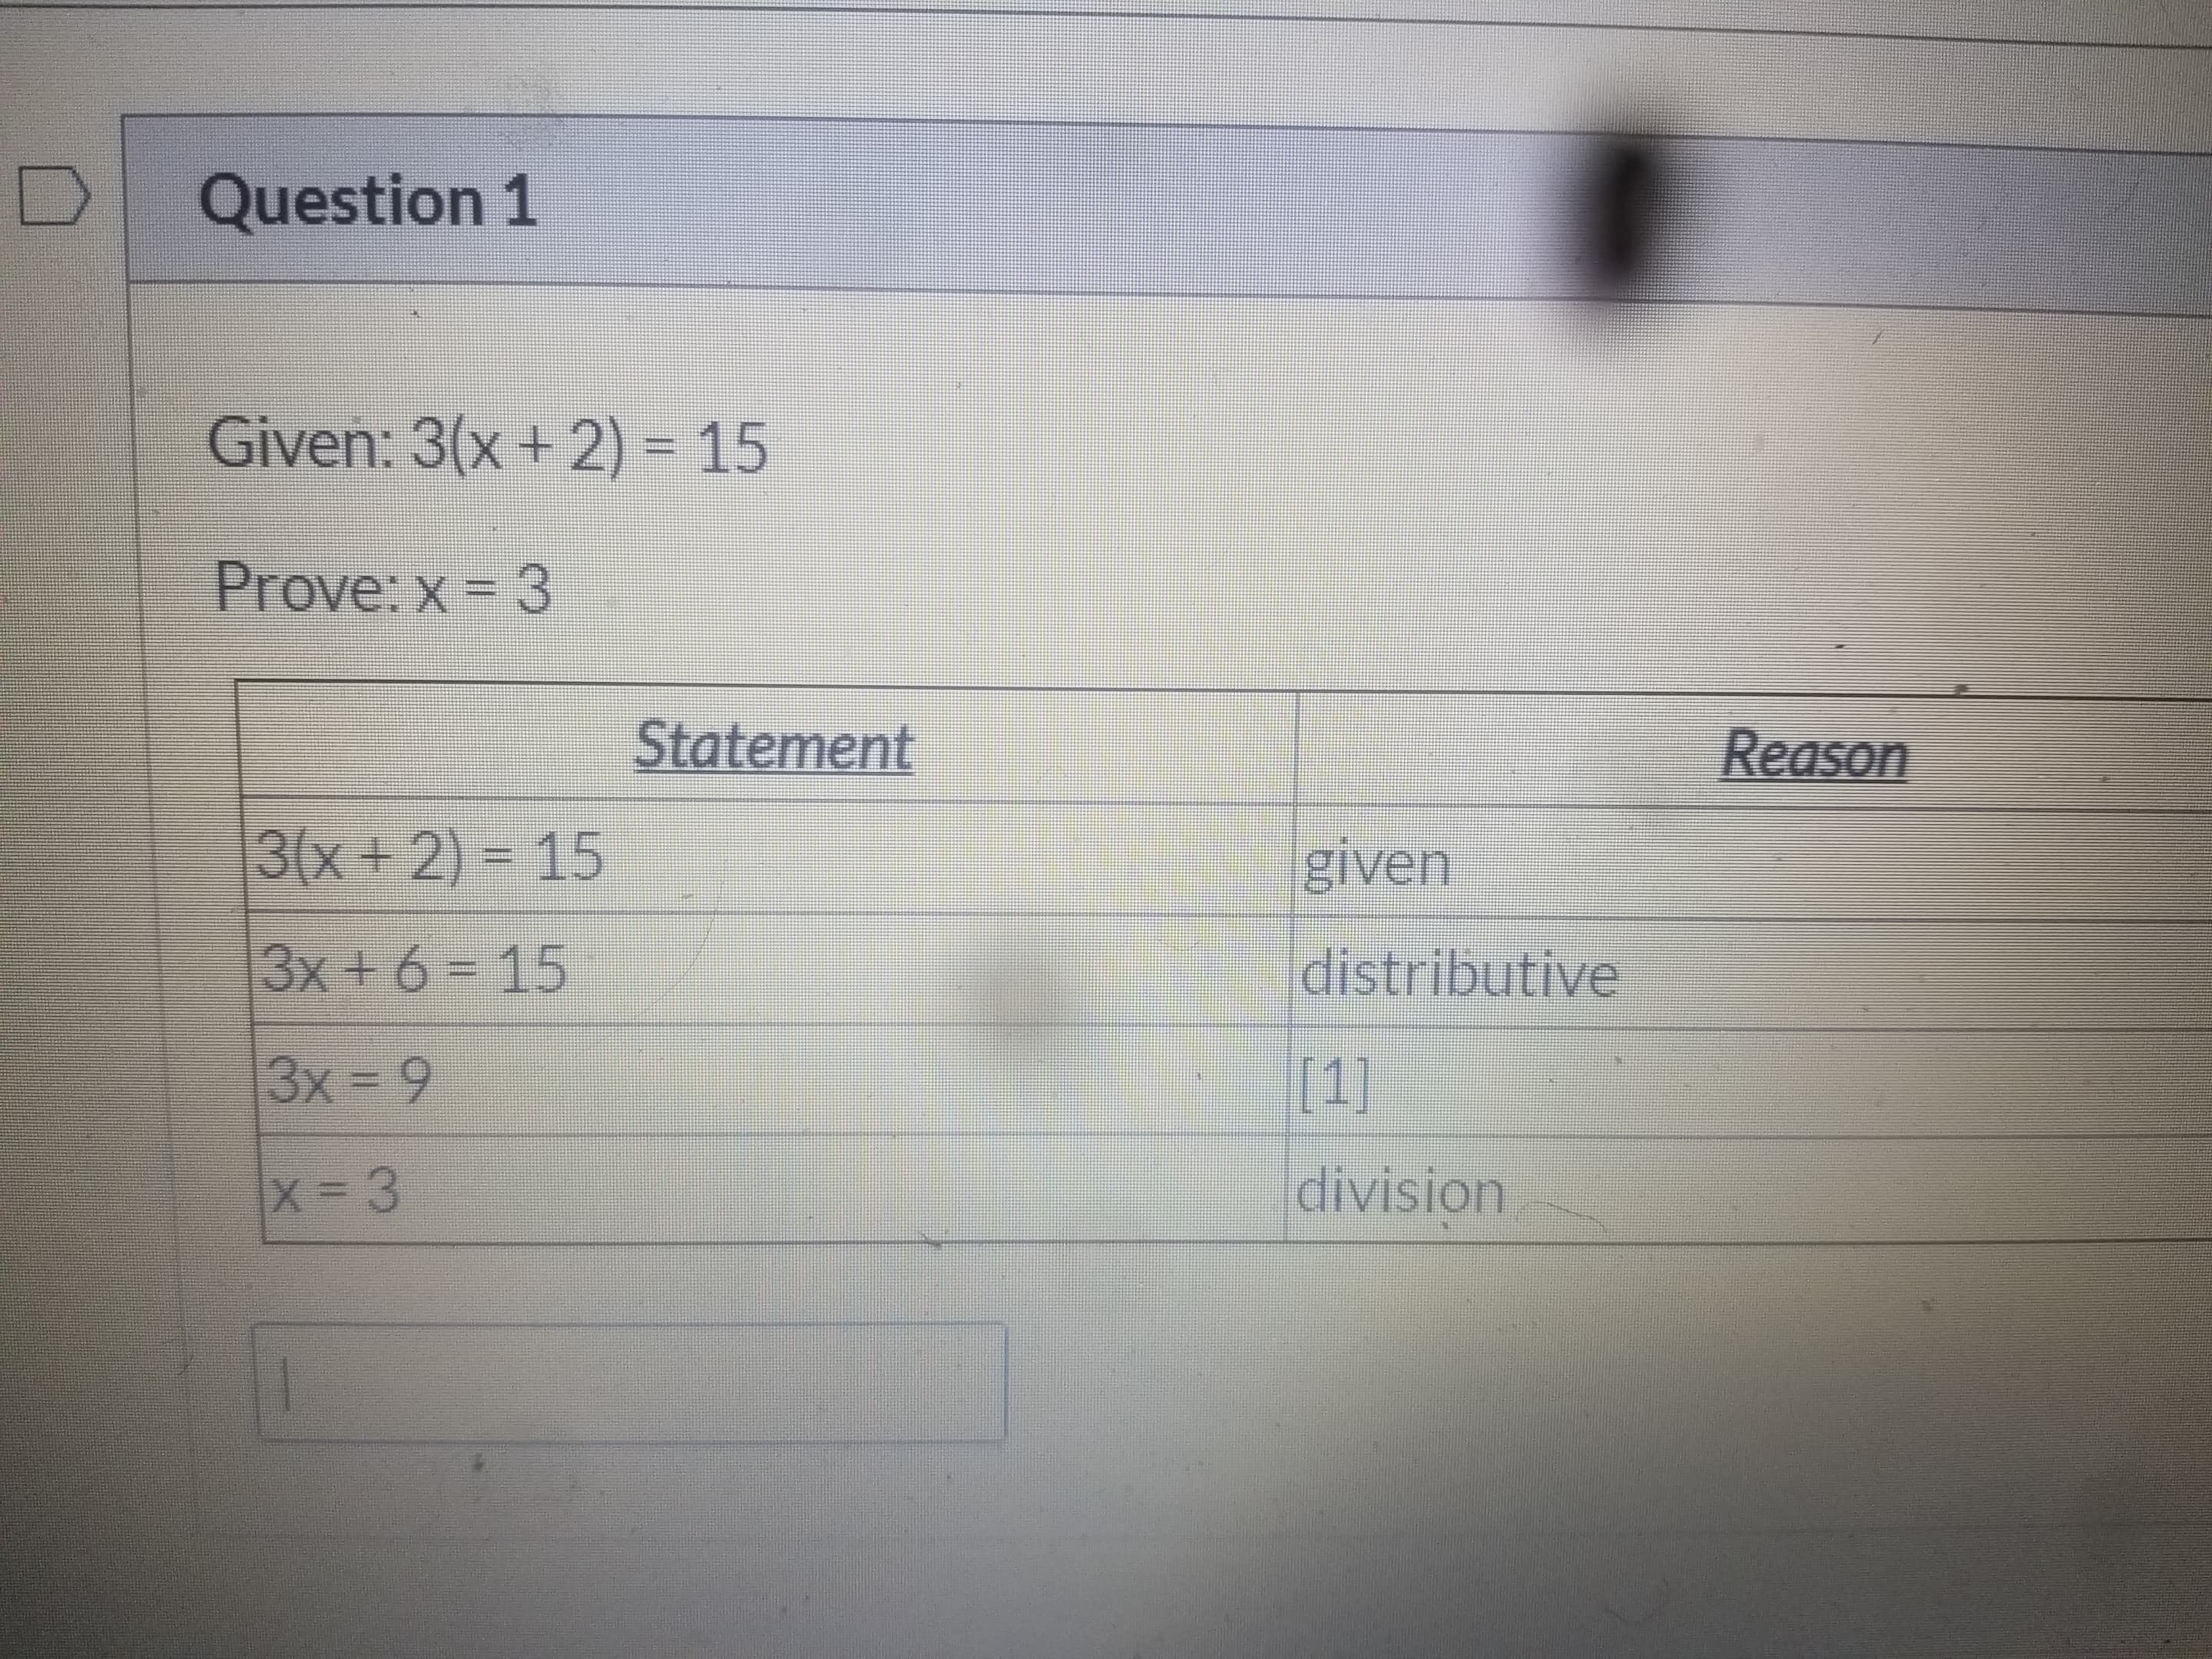 Given: 3(x + 2) = 15
Prove: x = 3
